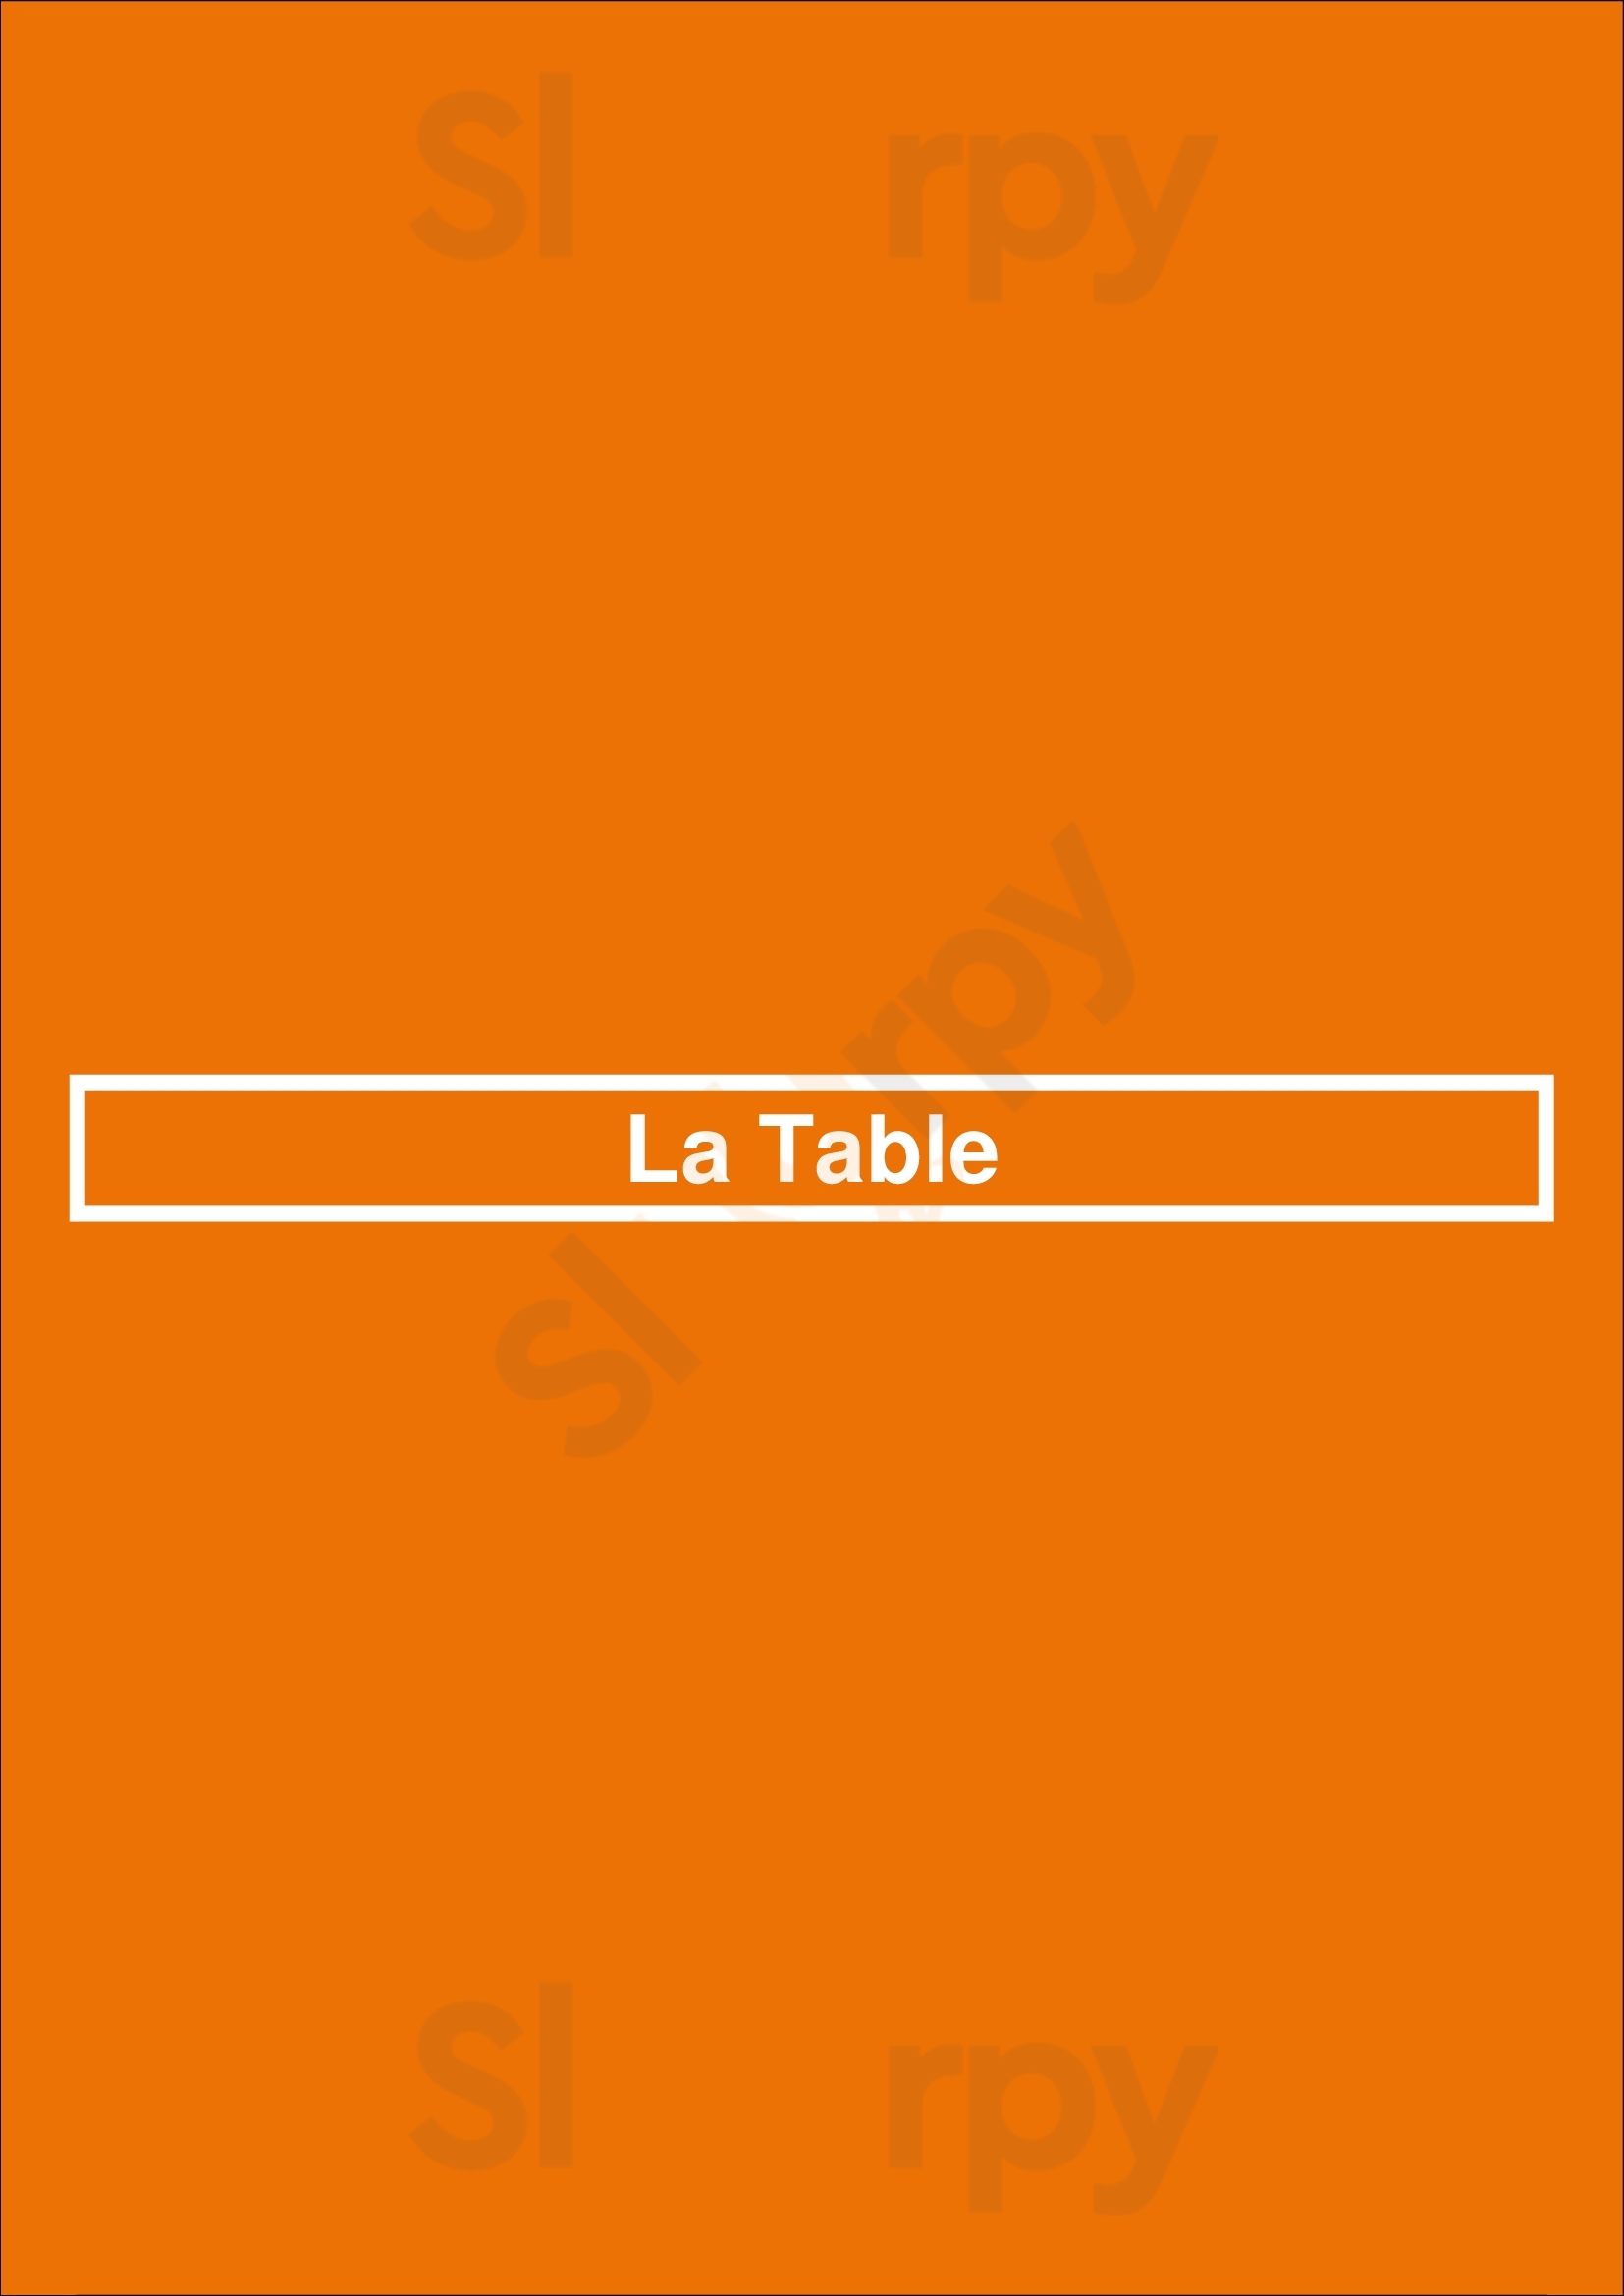 La Table Houston Menu - 1